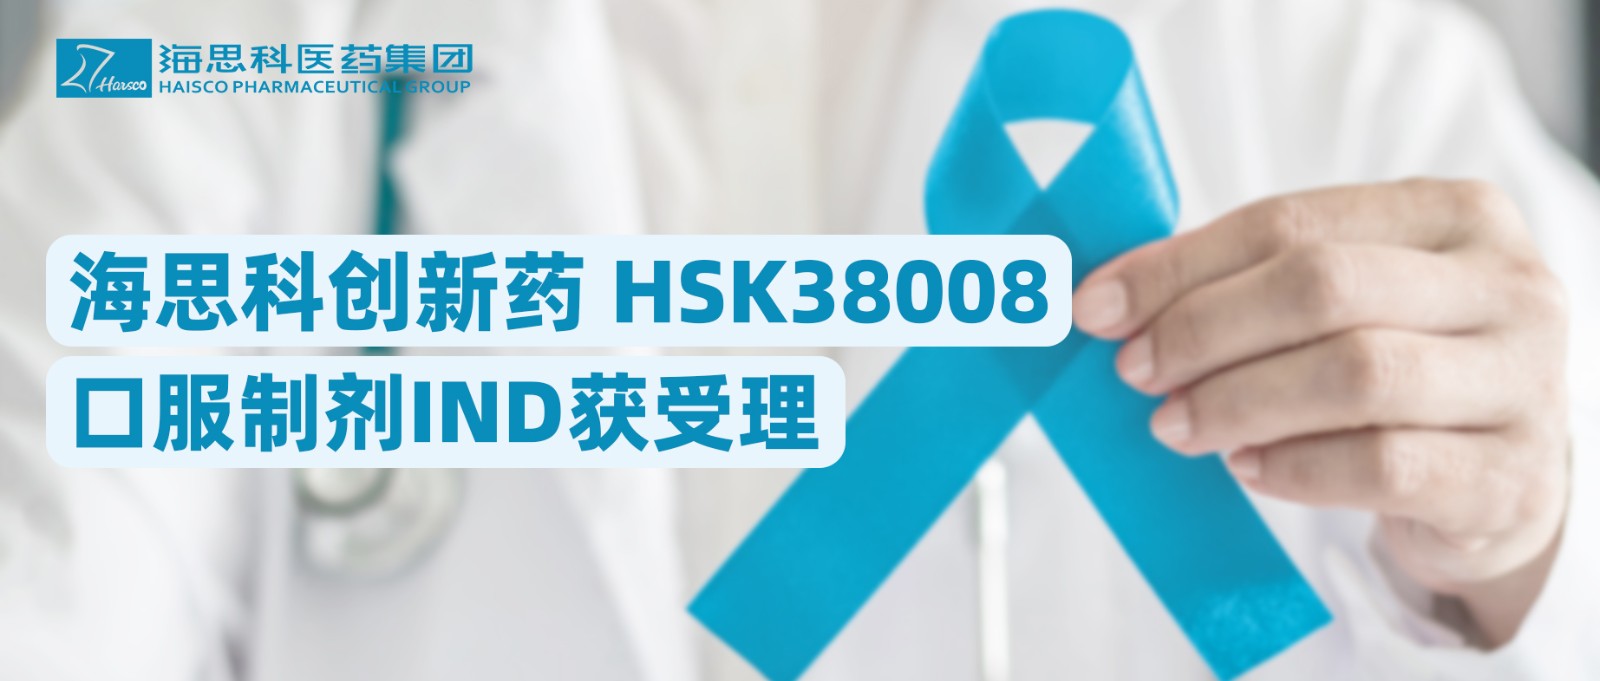 乐鱼游戏app正规版创新药HSK38008口服制剂IND获受理